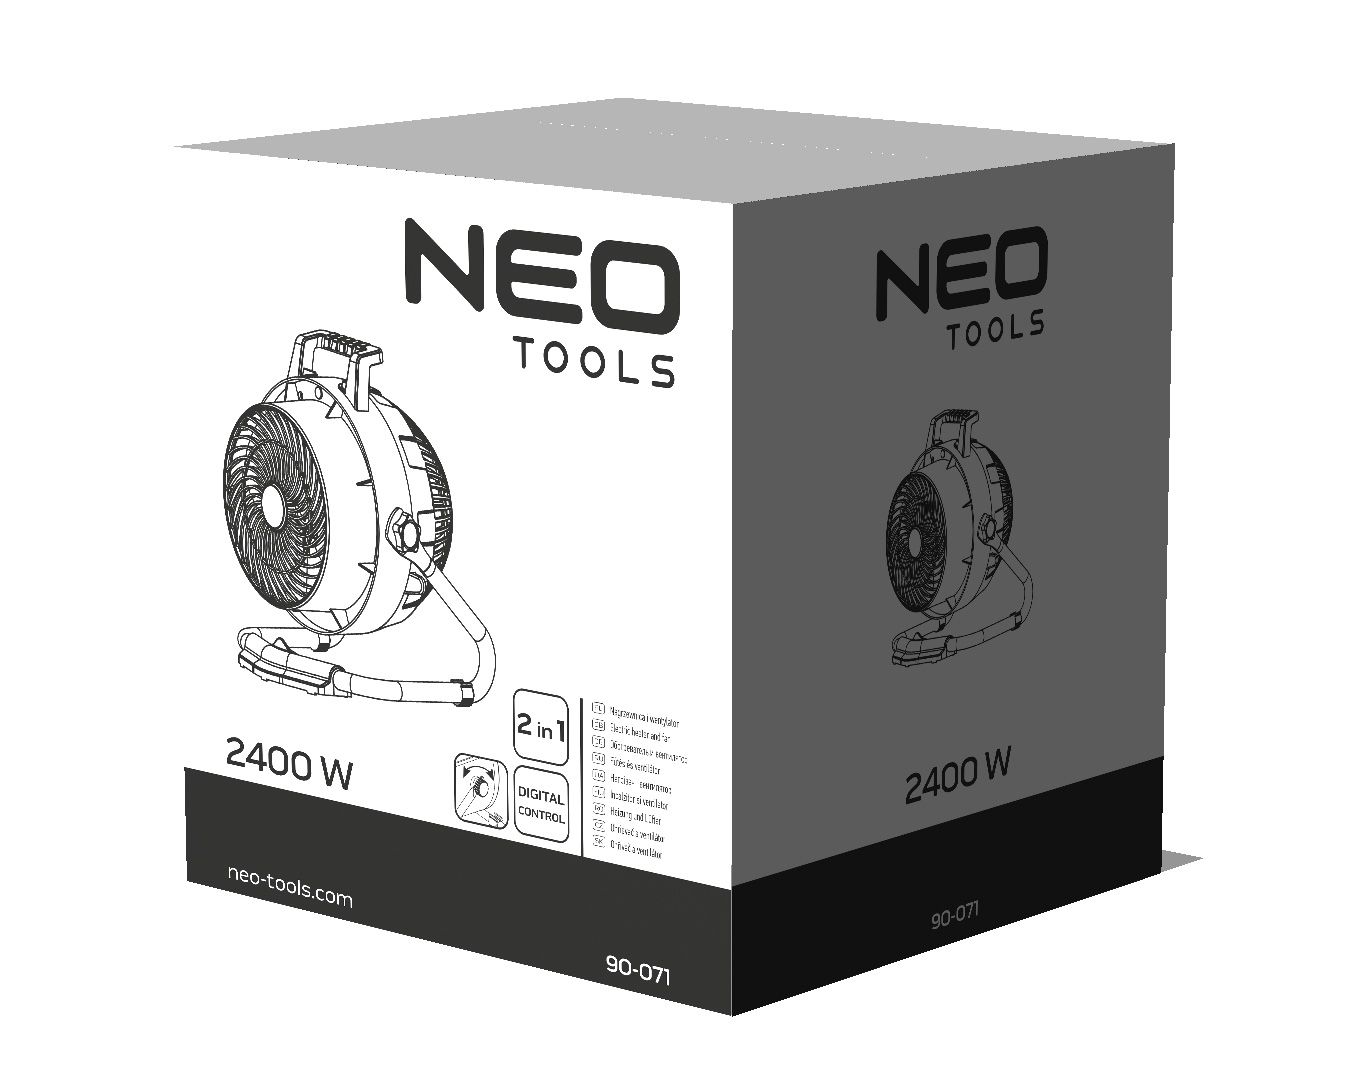 Тепловентилятор Neo Tools 90-071 отзывы - изображения 5